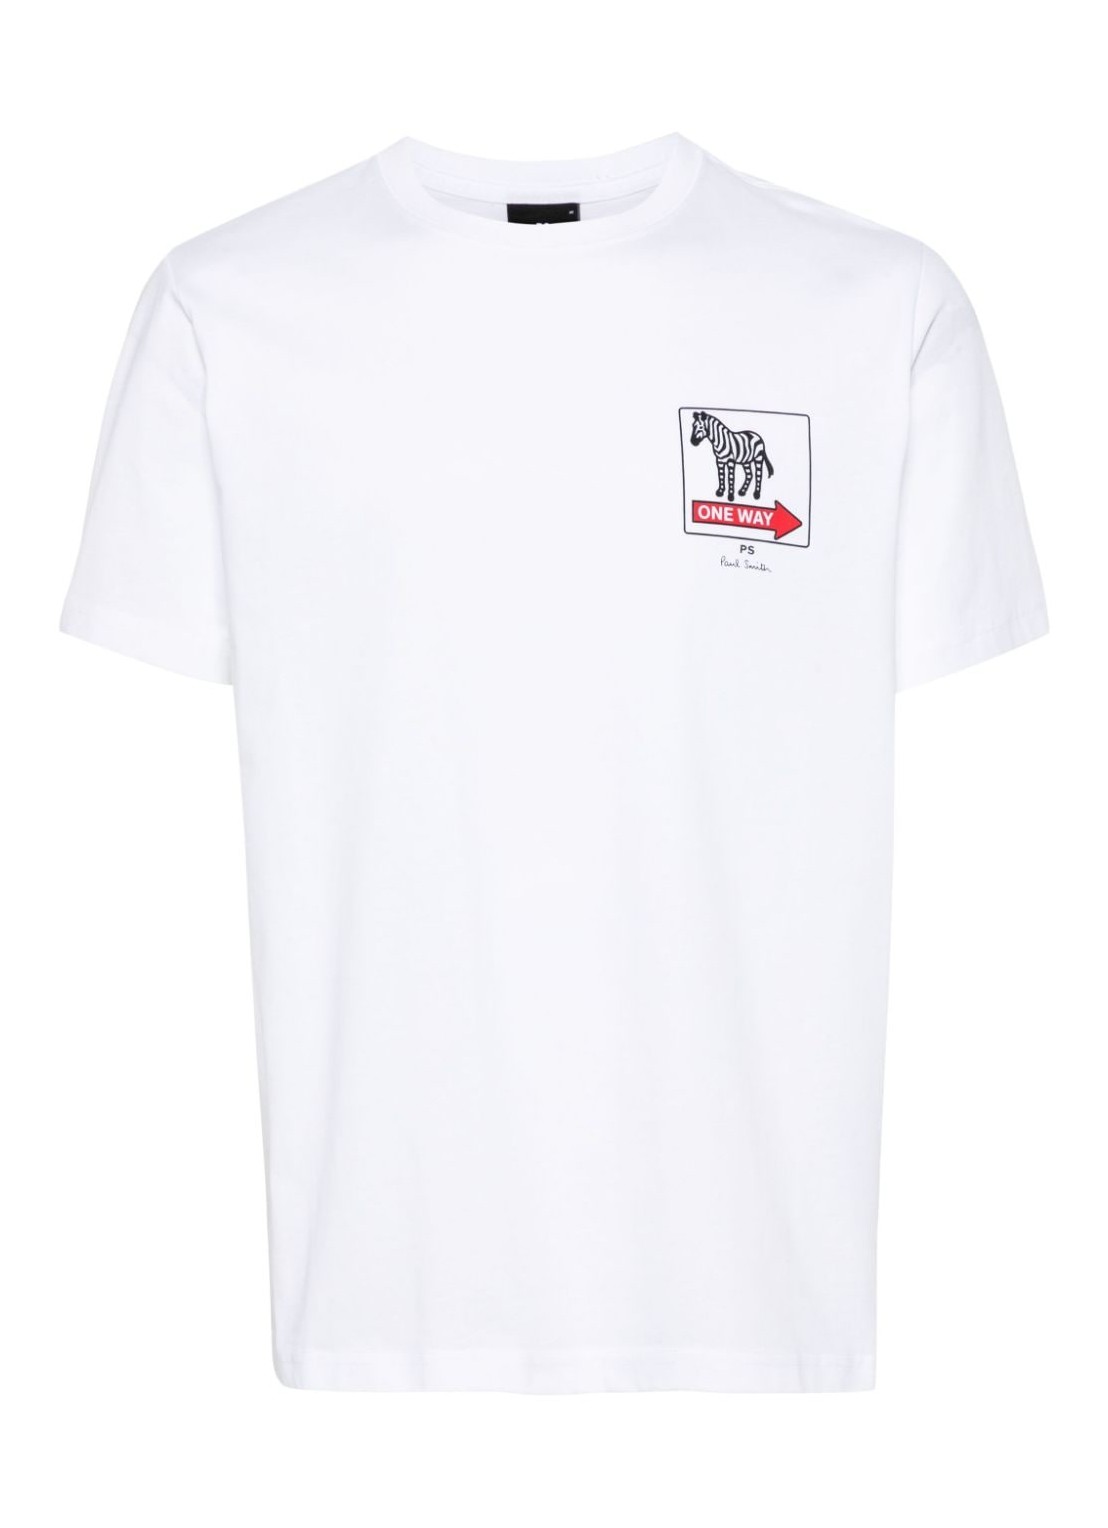 Camiseta ps t-shirt man mens reg fit t shirt one way zebra m2r011rmp4439 01 talla L
 